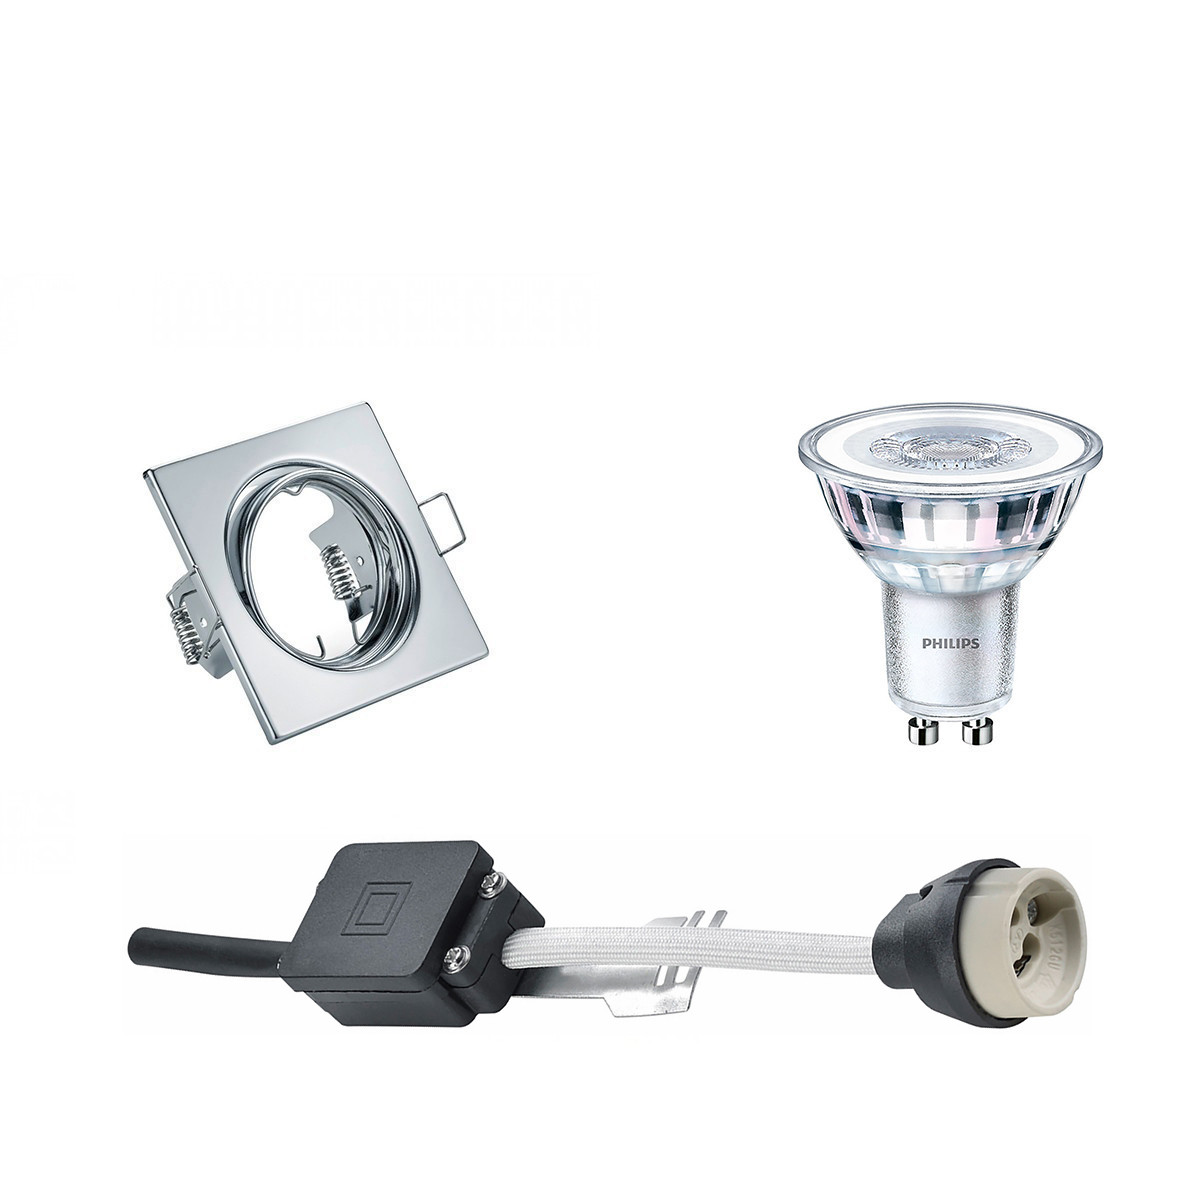 LED Spot Set - GU10 Fitting - Inbouw Vierkant - Glans Chroom - Kantelbaar 80mm - Philips - CorePro 8